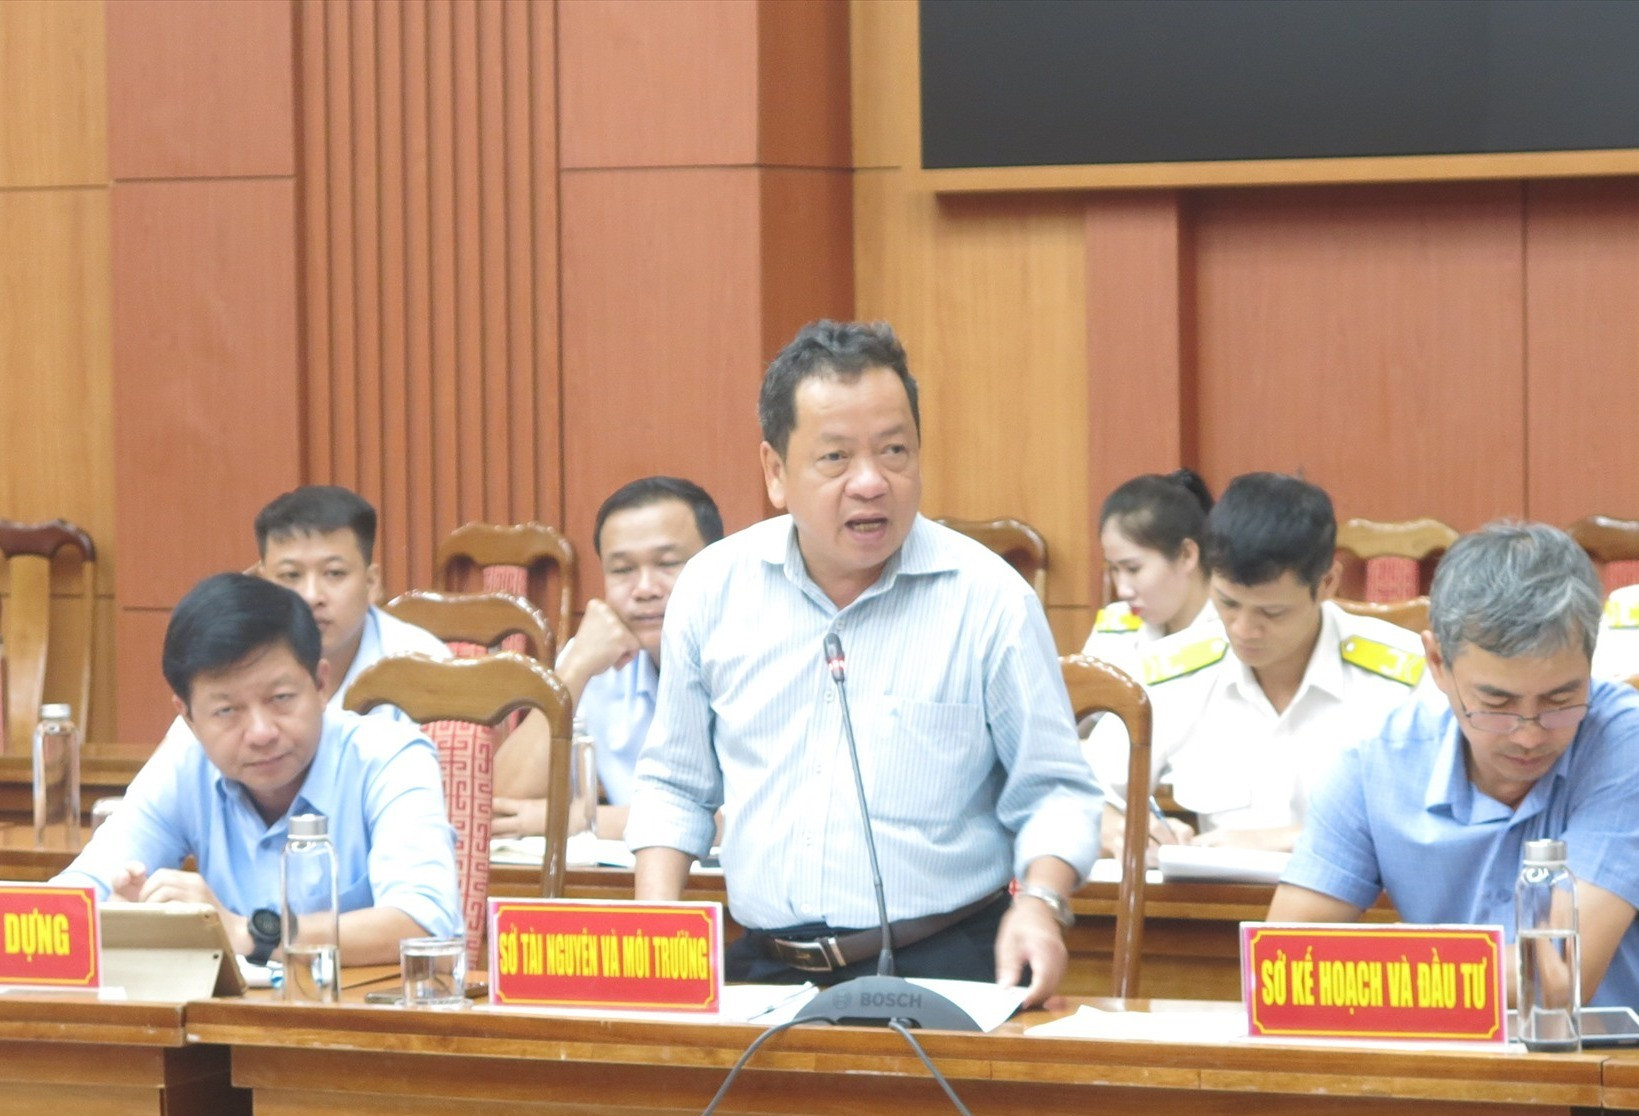 Ông Nguyễn Văn Thọ - Phó giám đốc Sở TN&MT giải trình về các dự án chậm áp giá đất